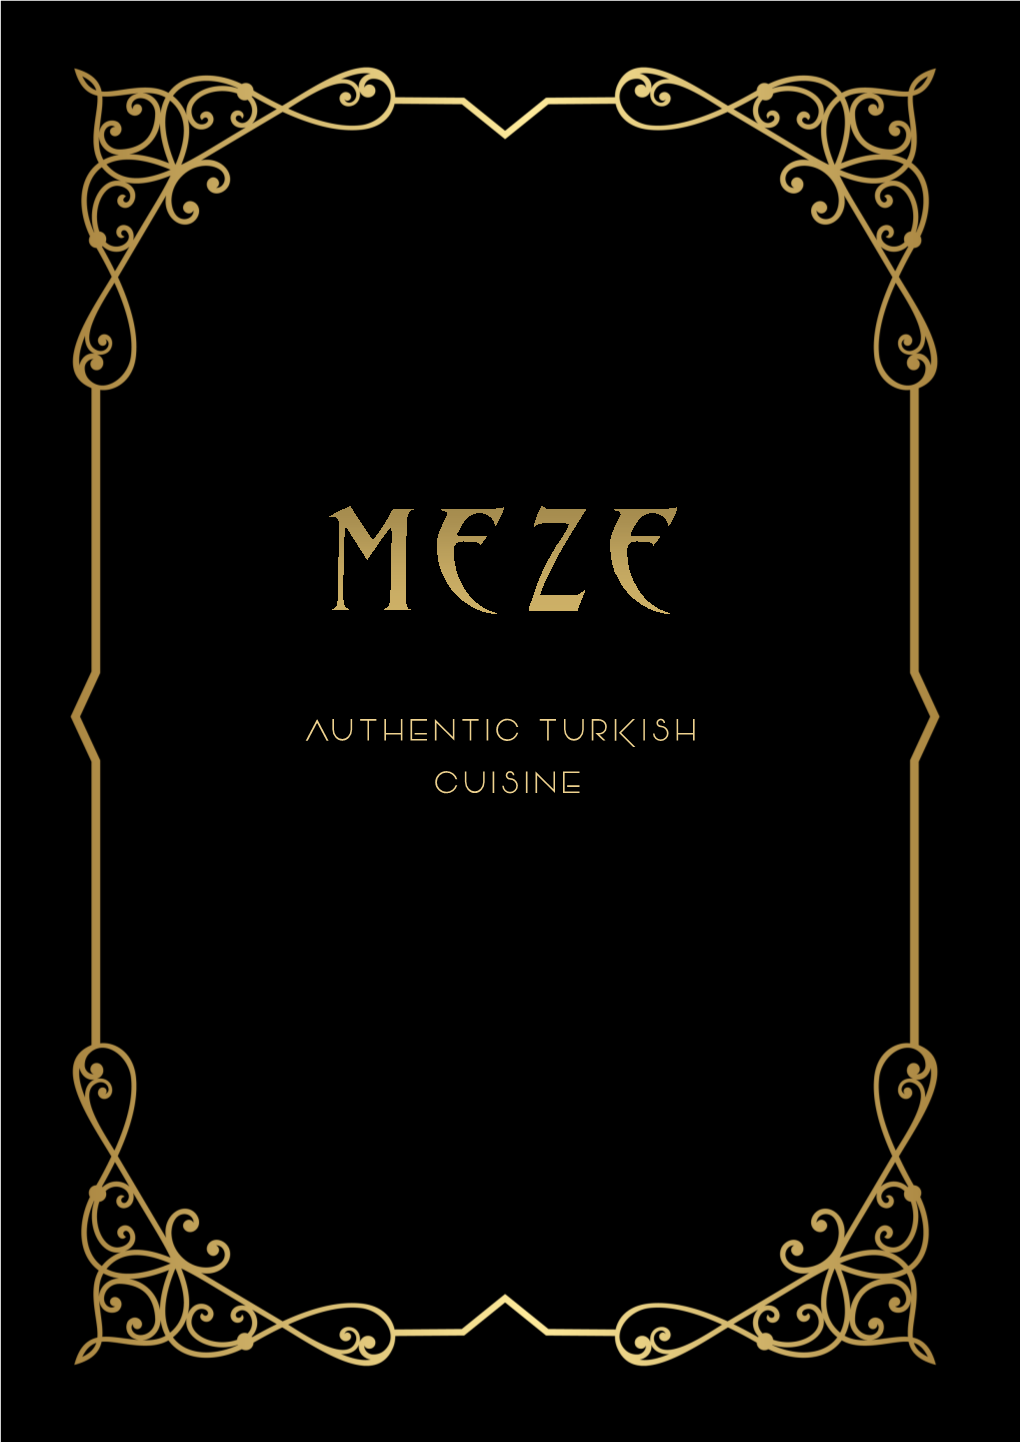 Authentic Turkish Cuisine